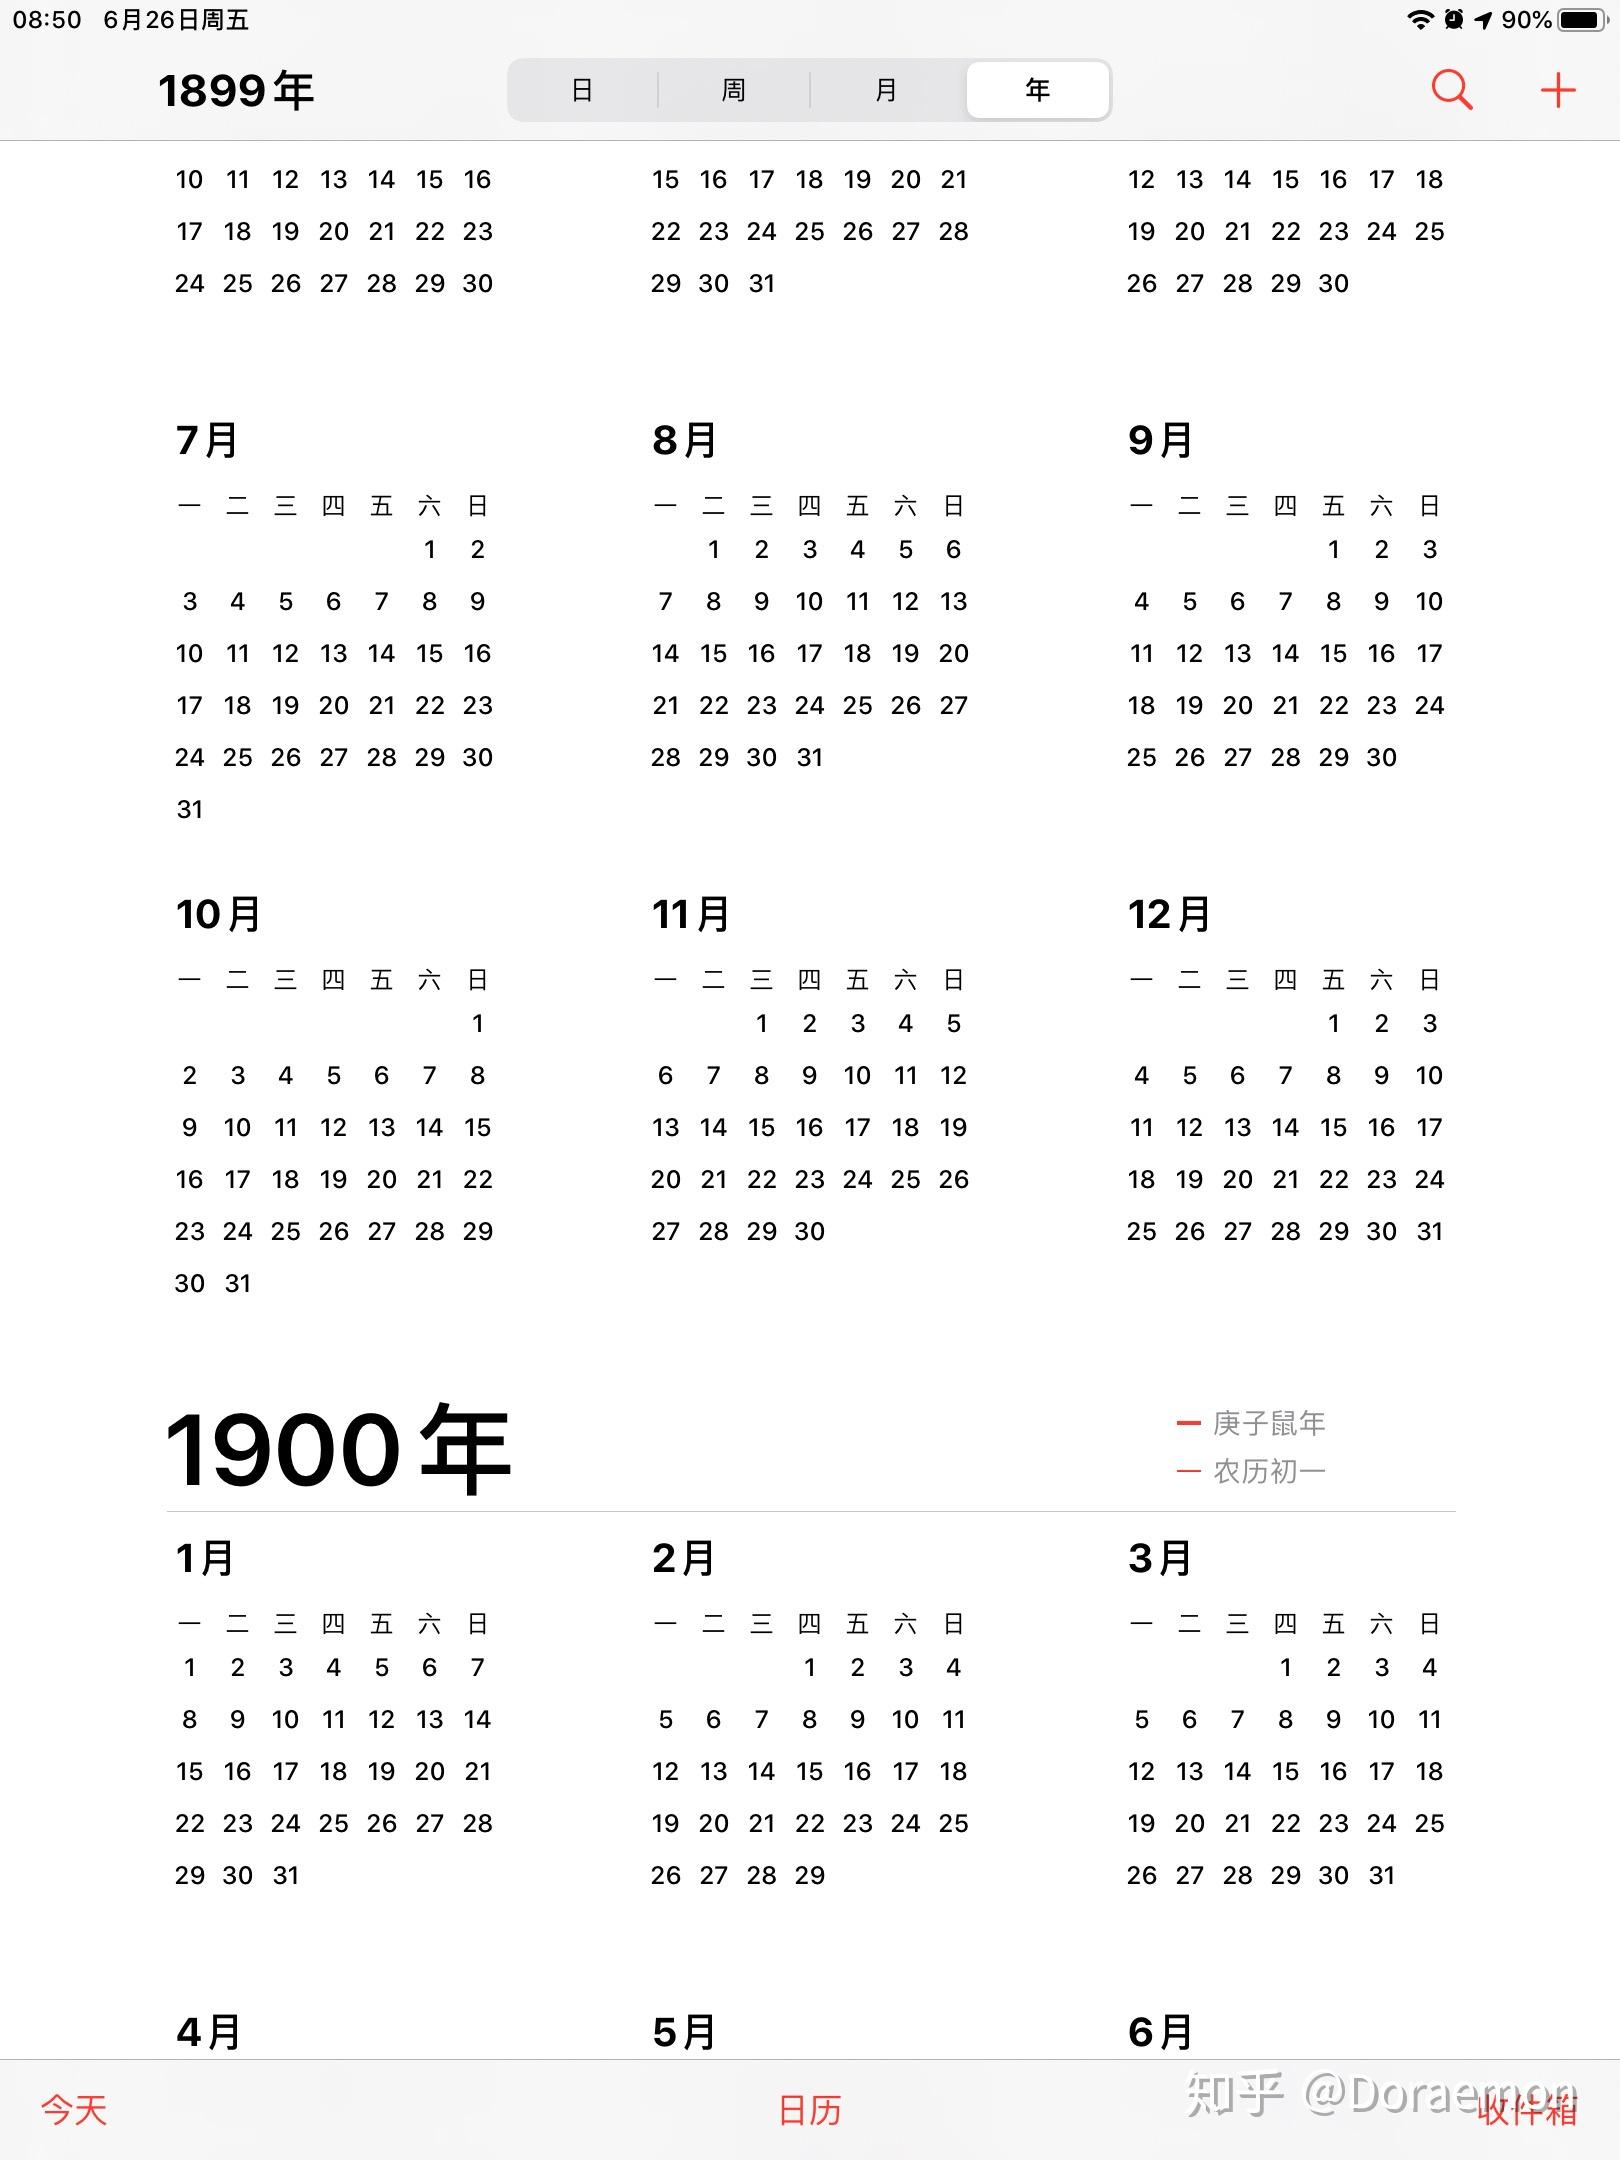 怎么看到1900年之前的日历? 